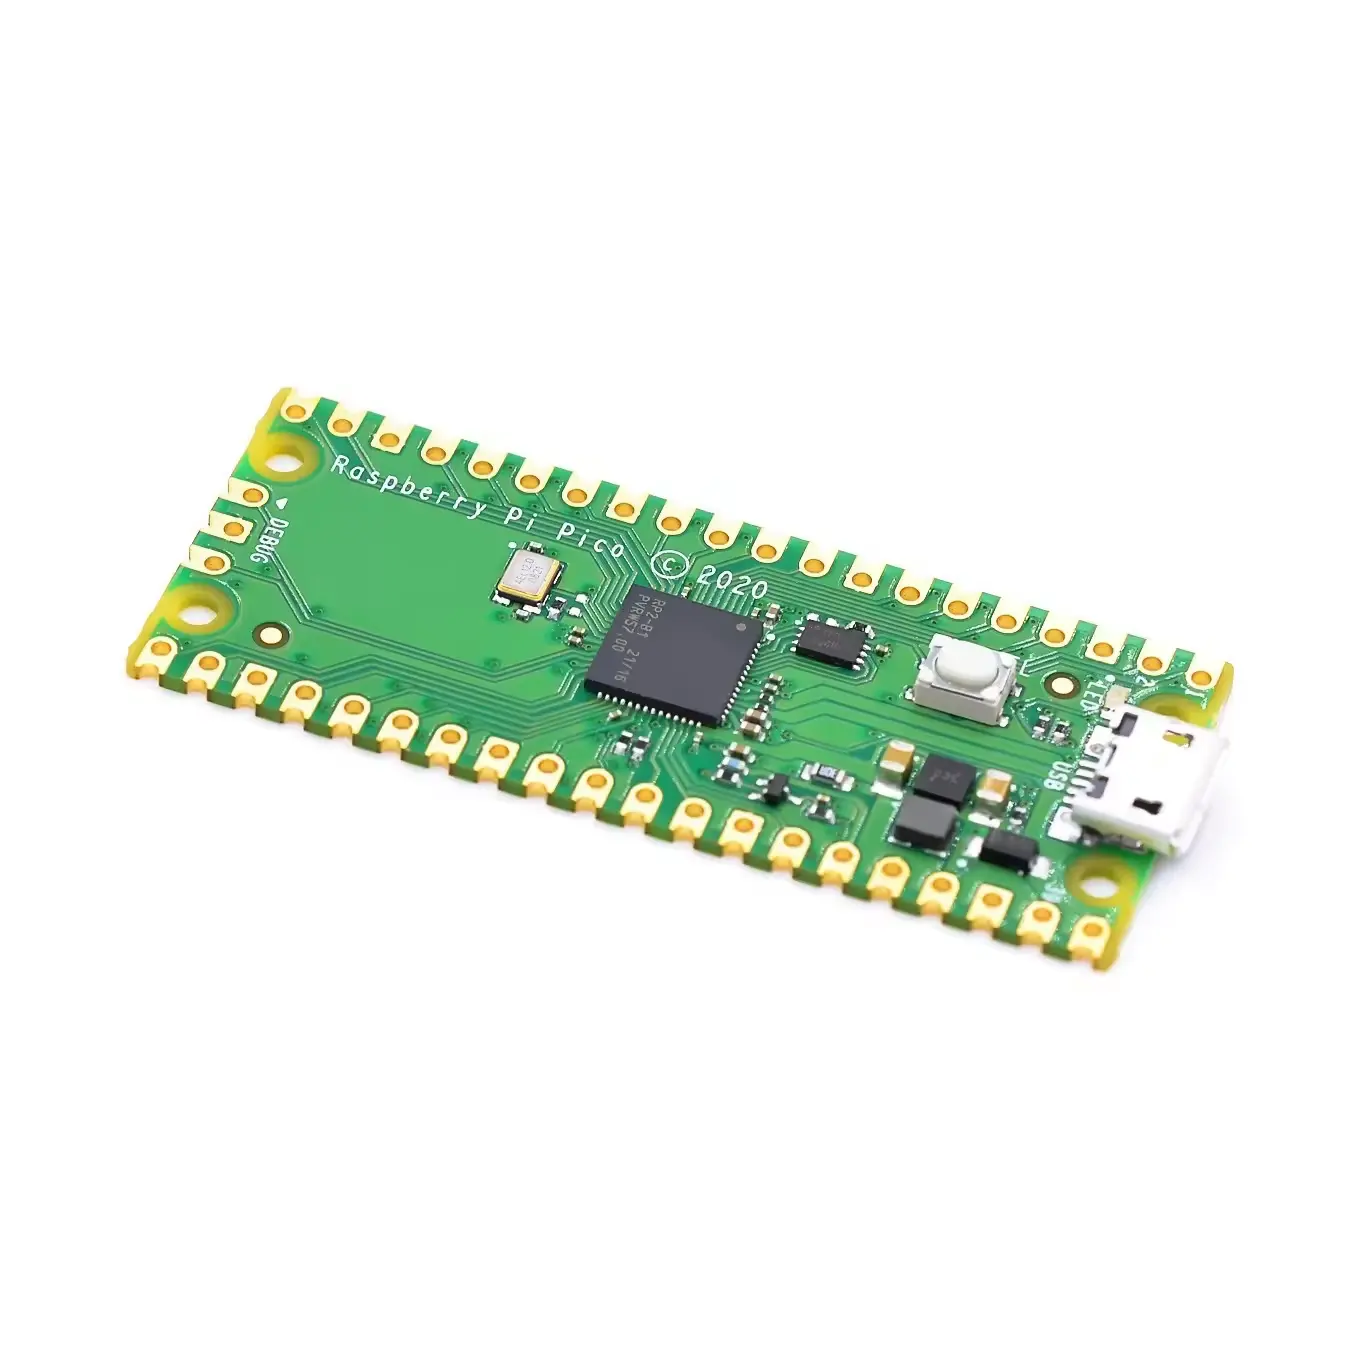 Chính thức Raspberry da picoboard rp2040 Dual-core 264Kb cánh tay điện năng thấp máy vi tính hiệu suất cao Cortex-M0 + Bộ vi xử lý